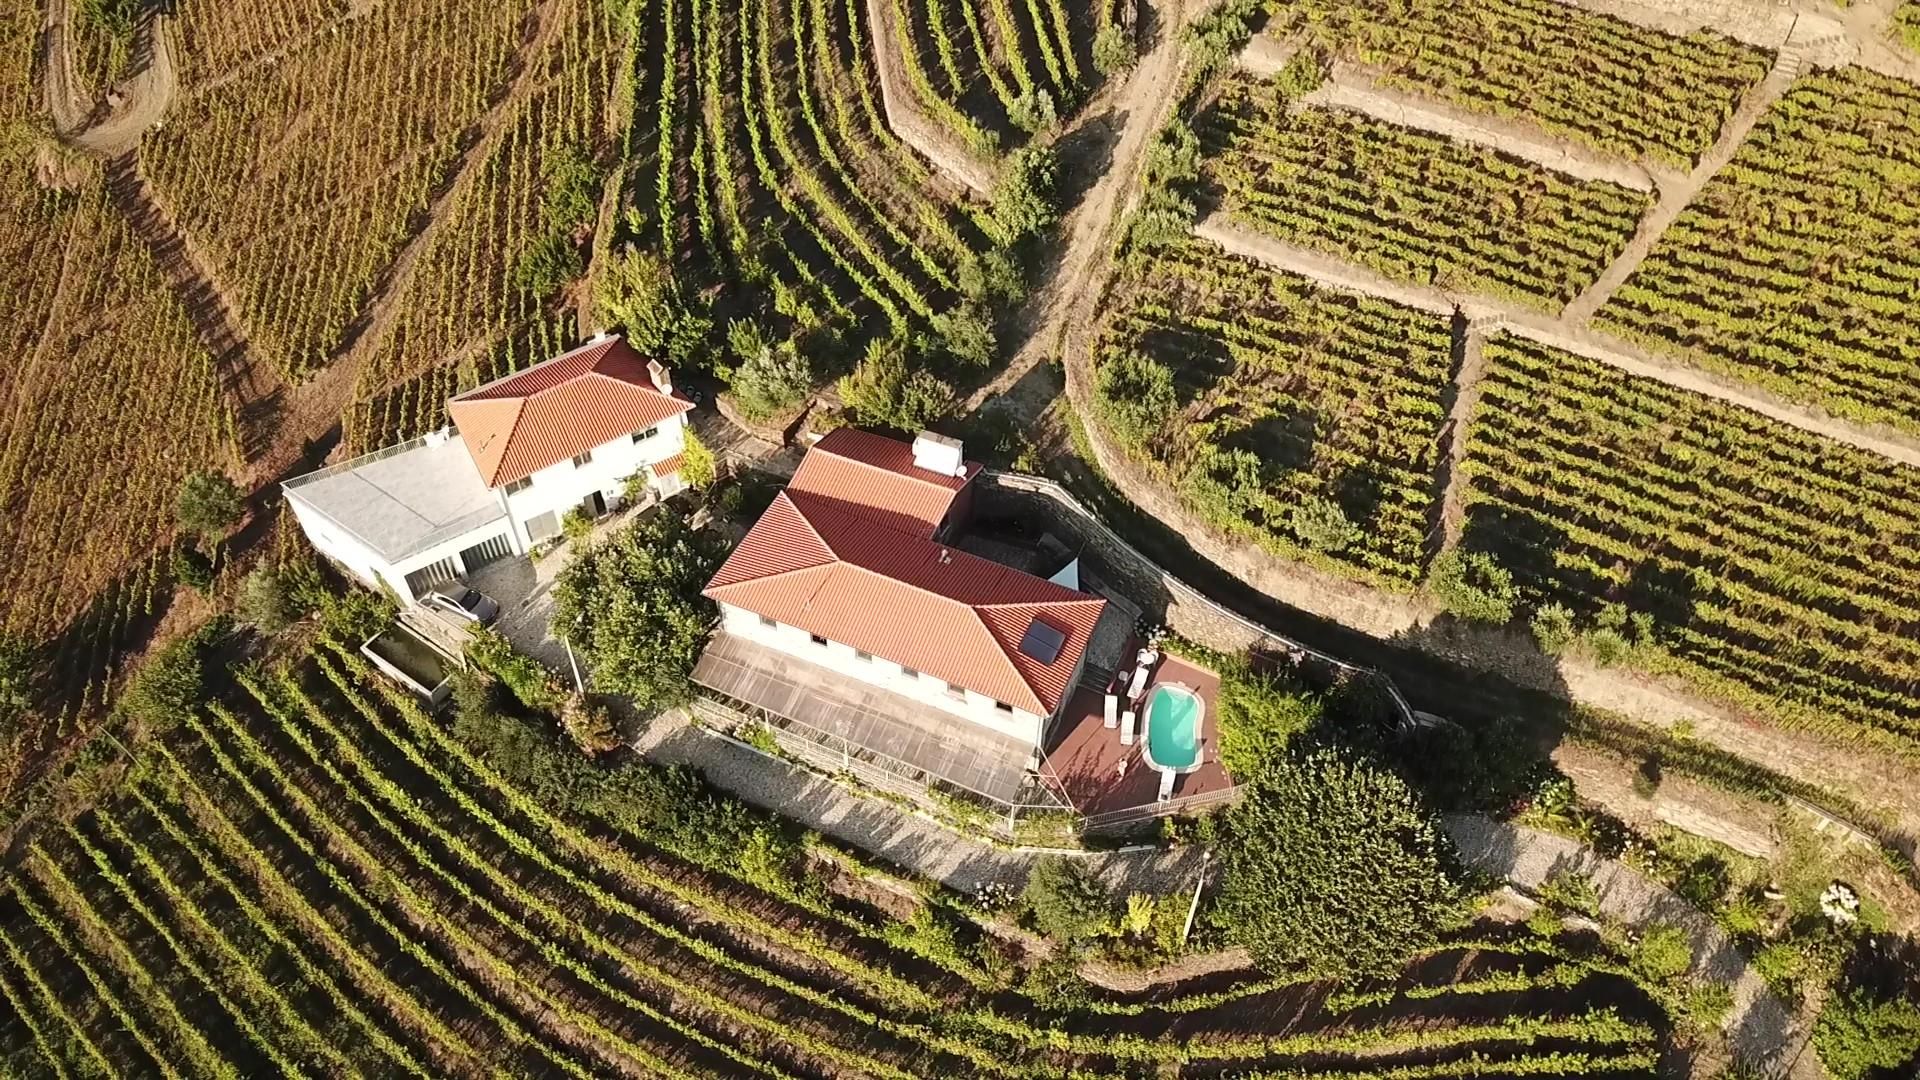 View of the Casa do Romezal estate